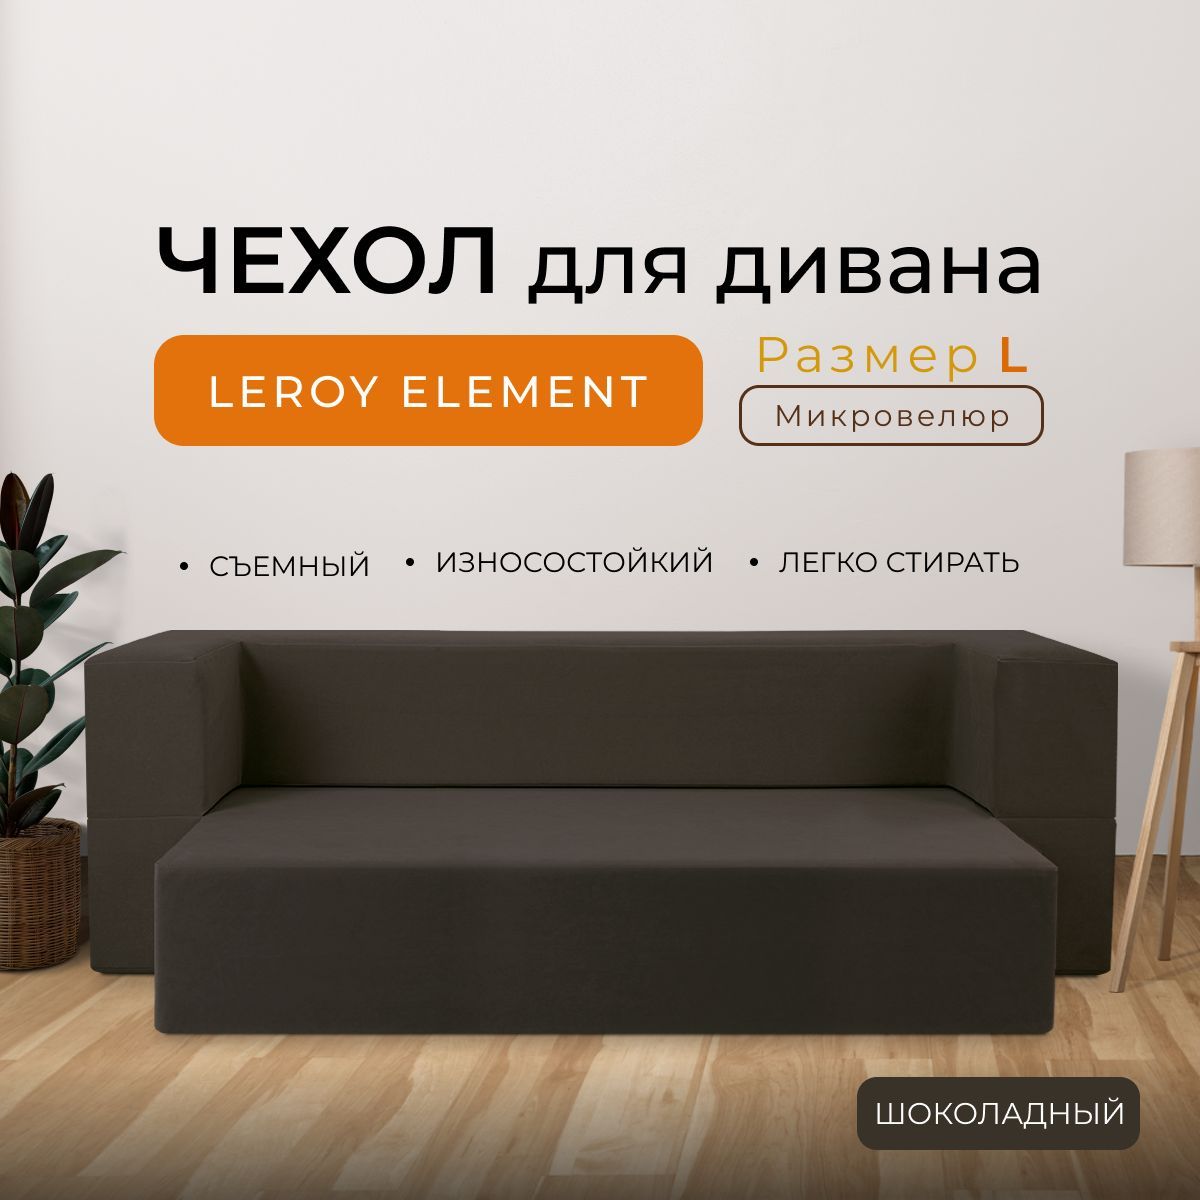 Чехол на мебель для дивана Leroy, 200х140см купить по выгодной цене винтернет-магазине OZON (1068576664)